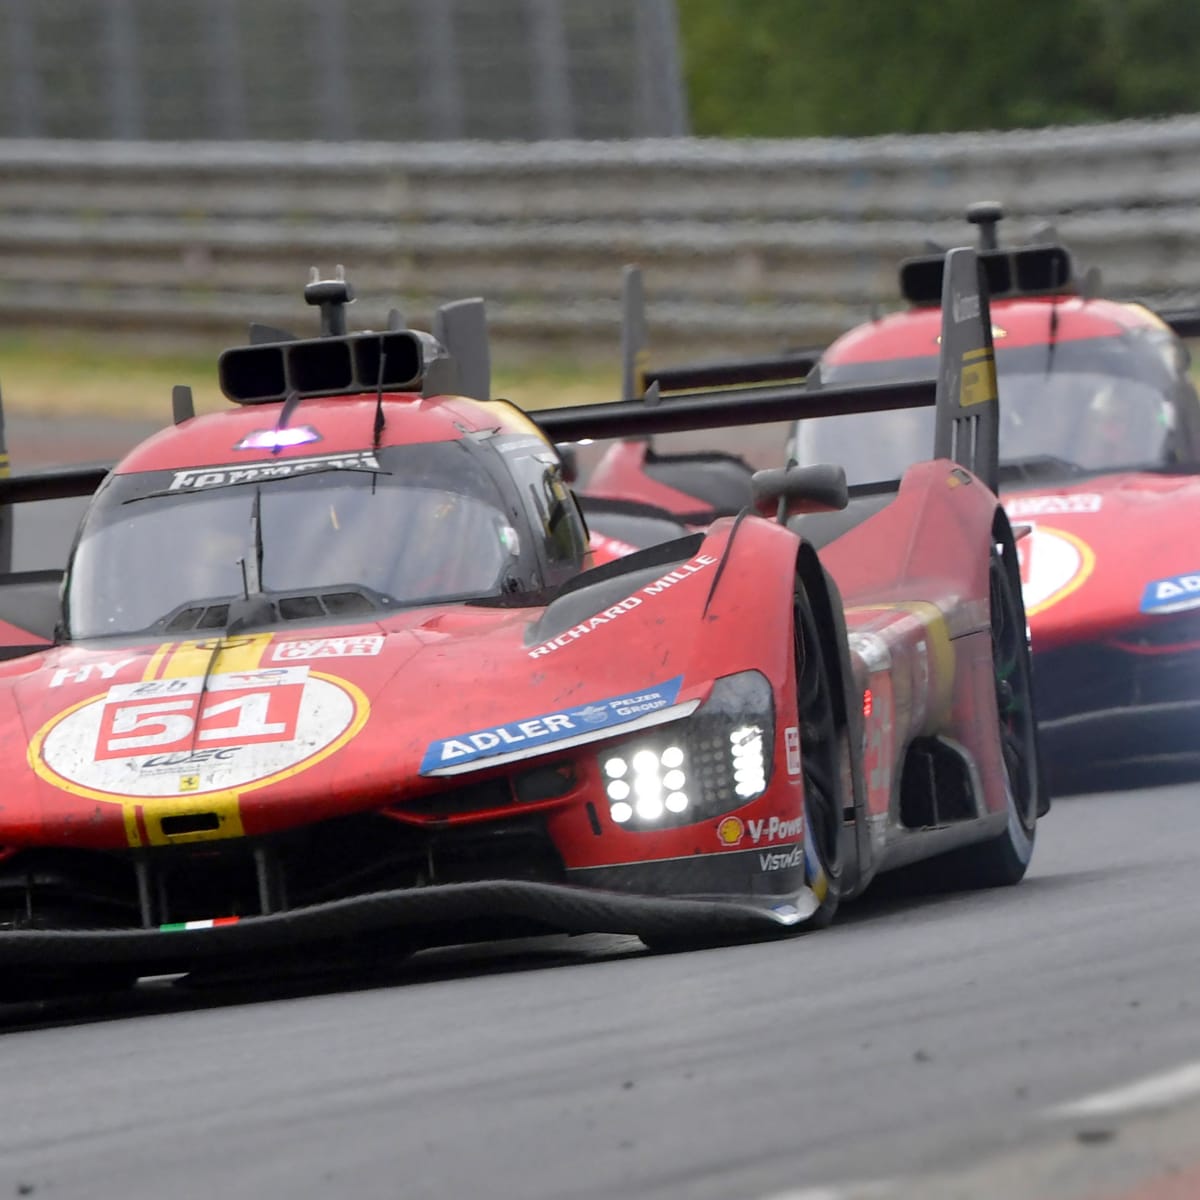 Ferrari is offering a multi-million dollar, Le Mans winning race